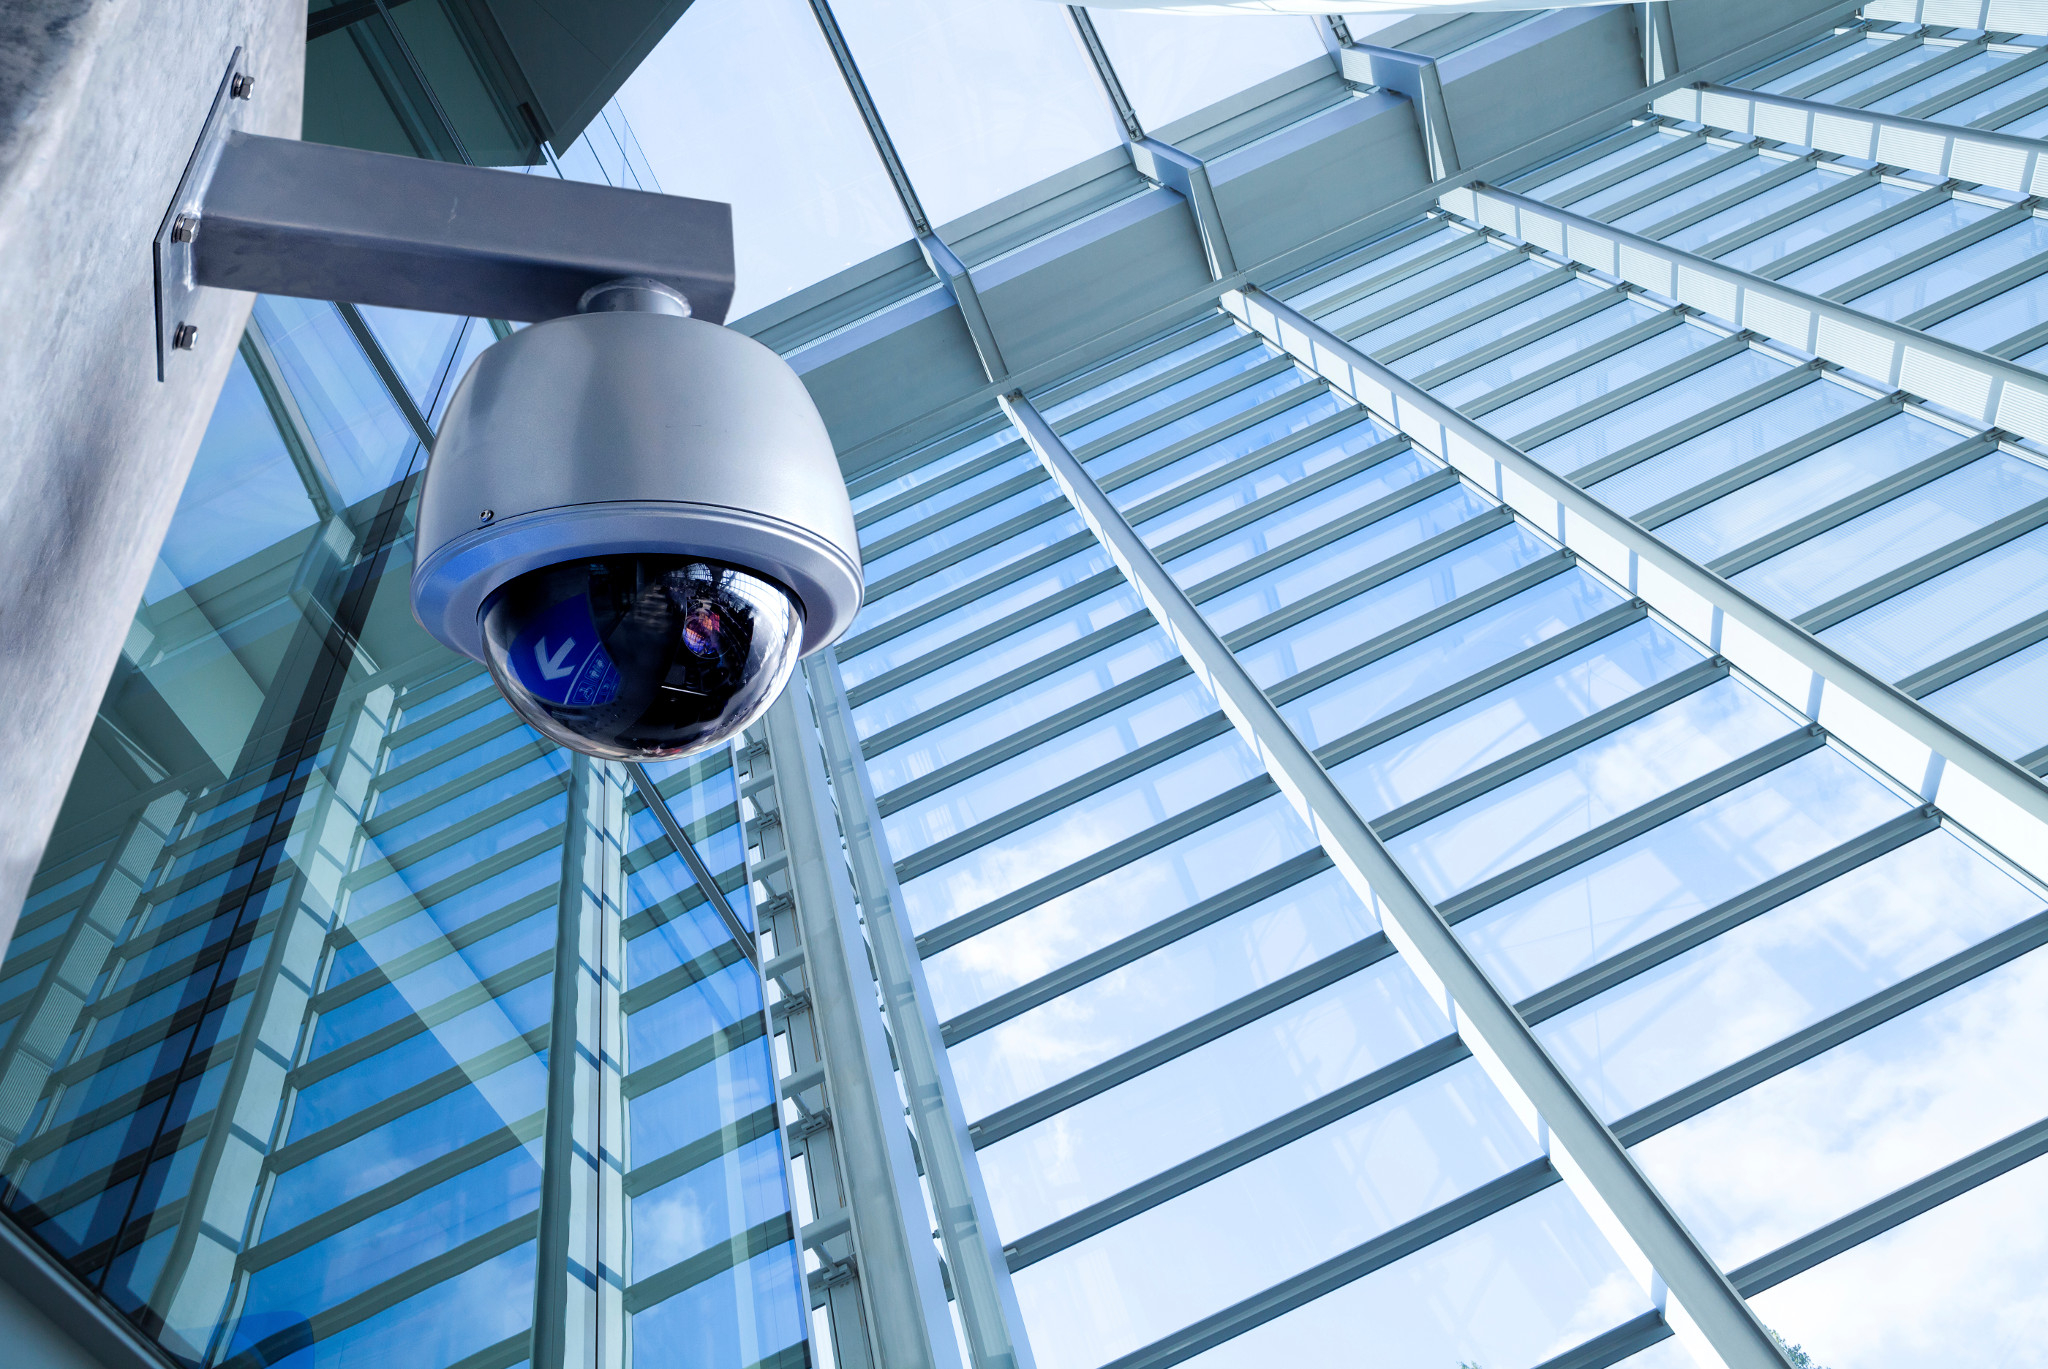 Cameras lethal company. Системы видеонаблюдения (CCTV). Камера видеонаблюдения CCTV. Камеры видеонаблюдения на здании. Сиситемы безопасности.